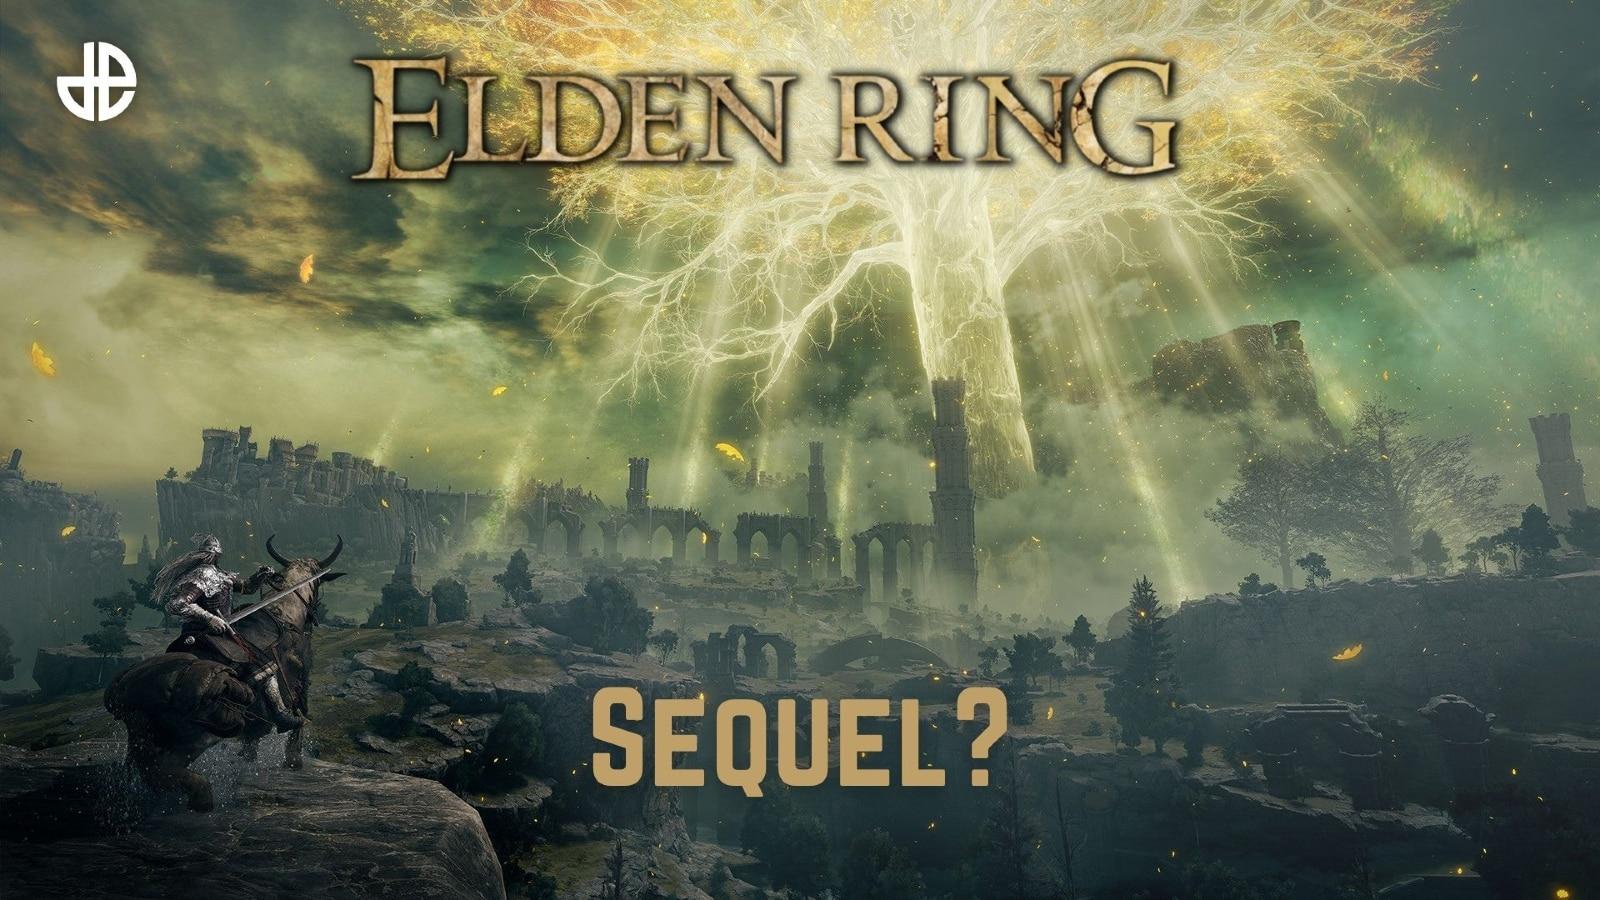 Elden Ring sequel